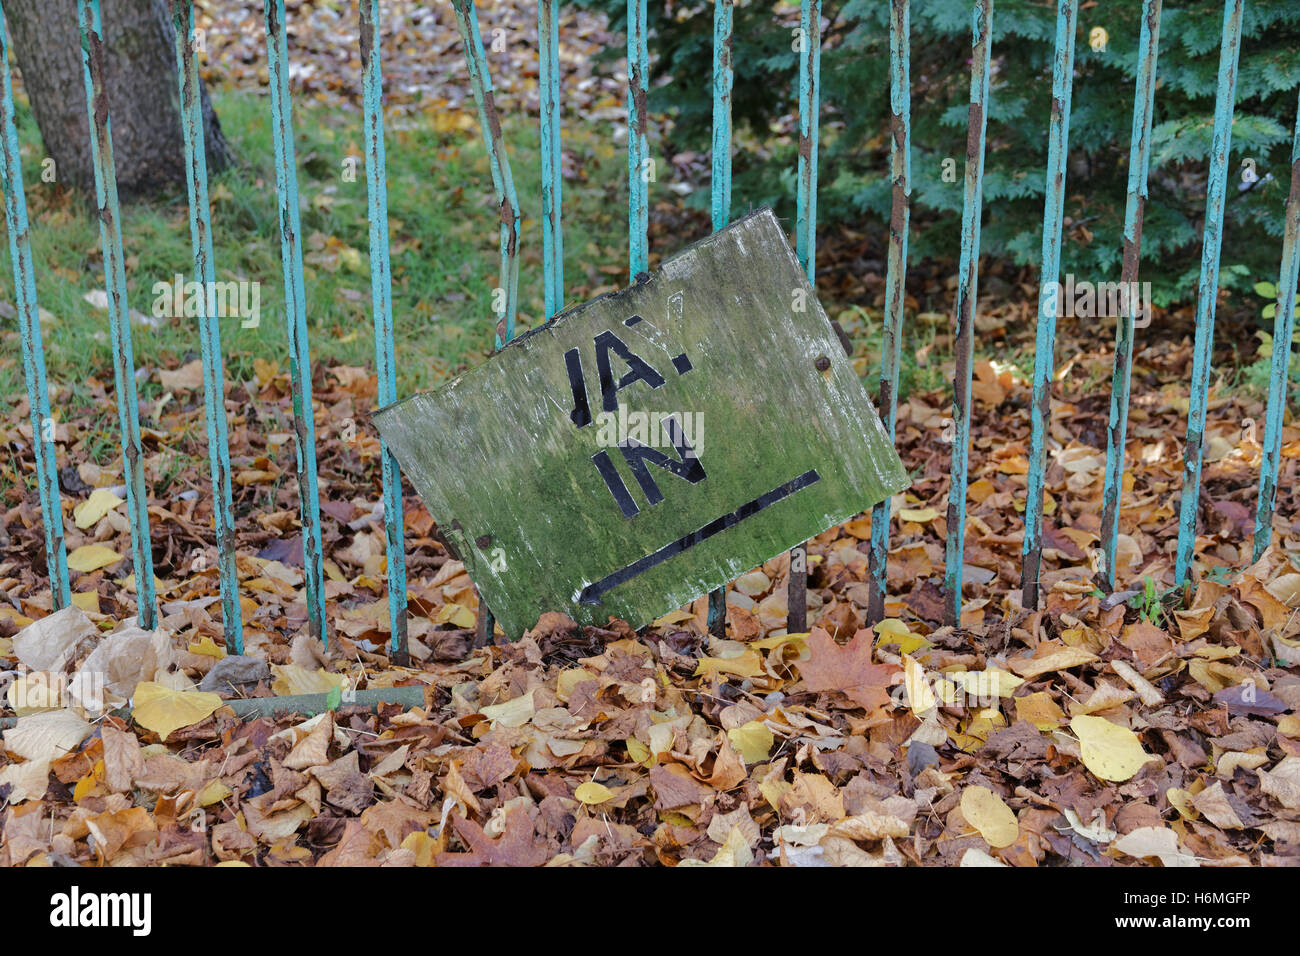 Modo ruinoso en signo barandas con parque verde caído hojas de otoño Foto de stock